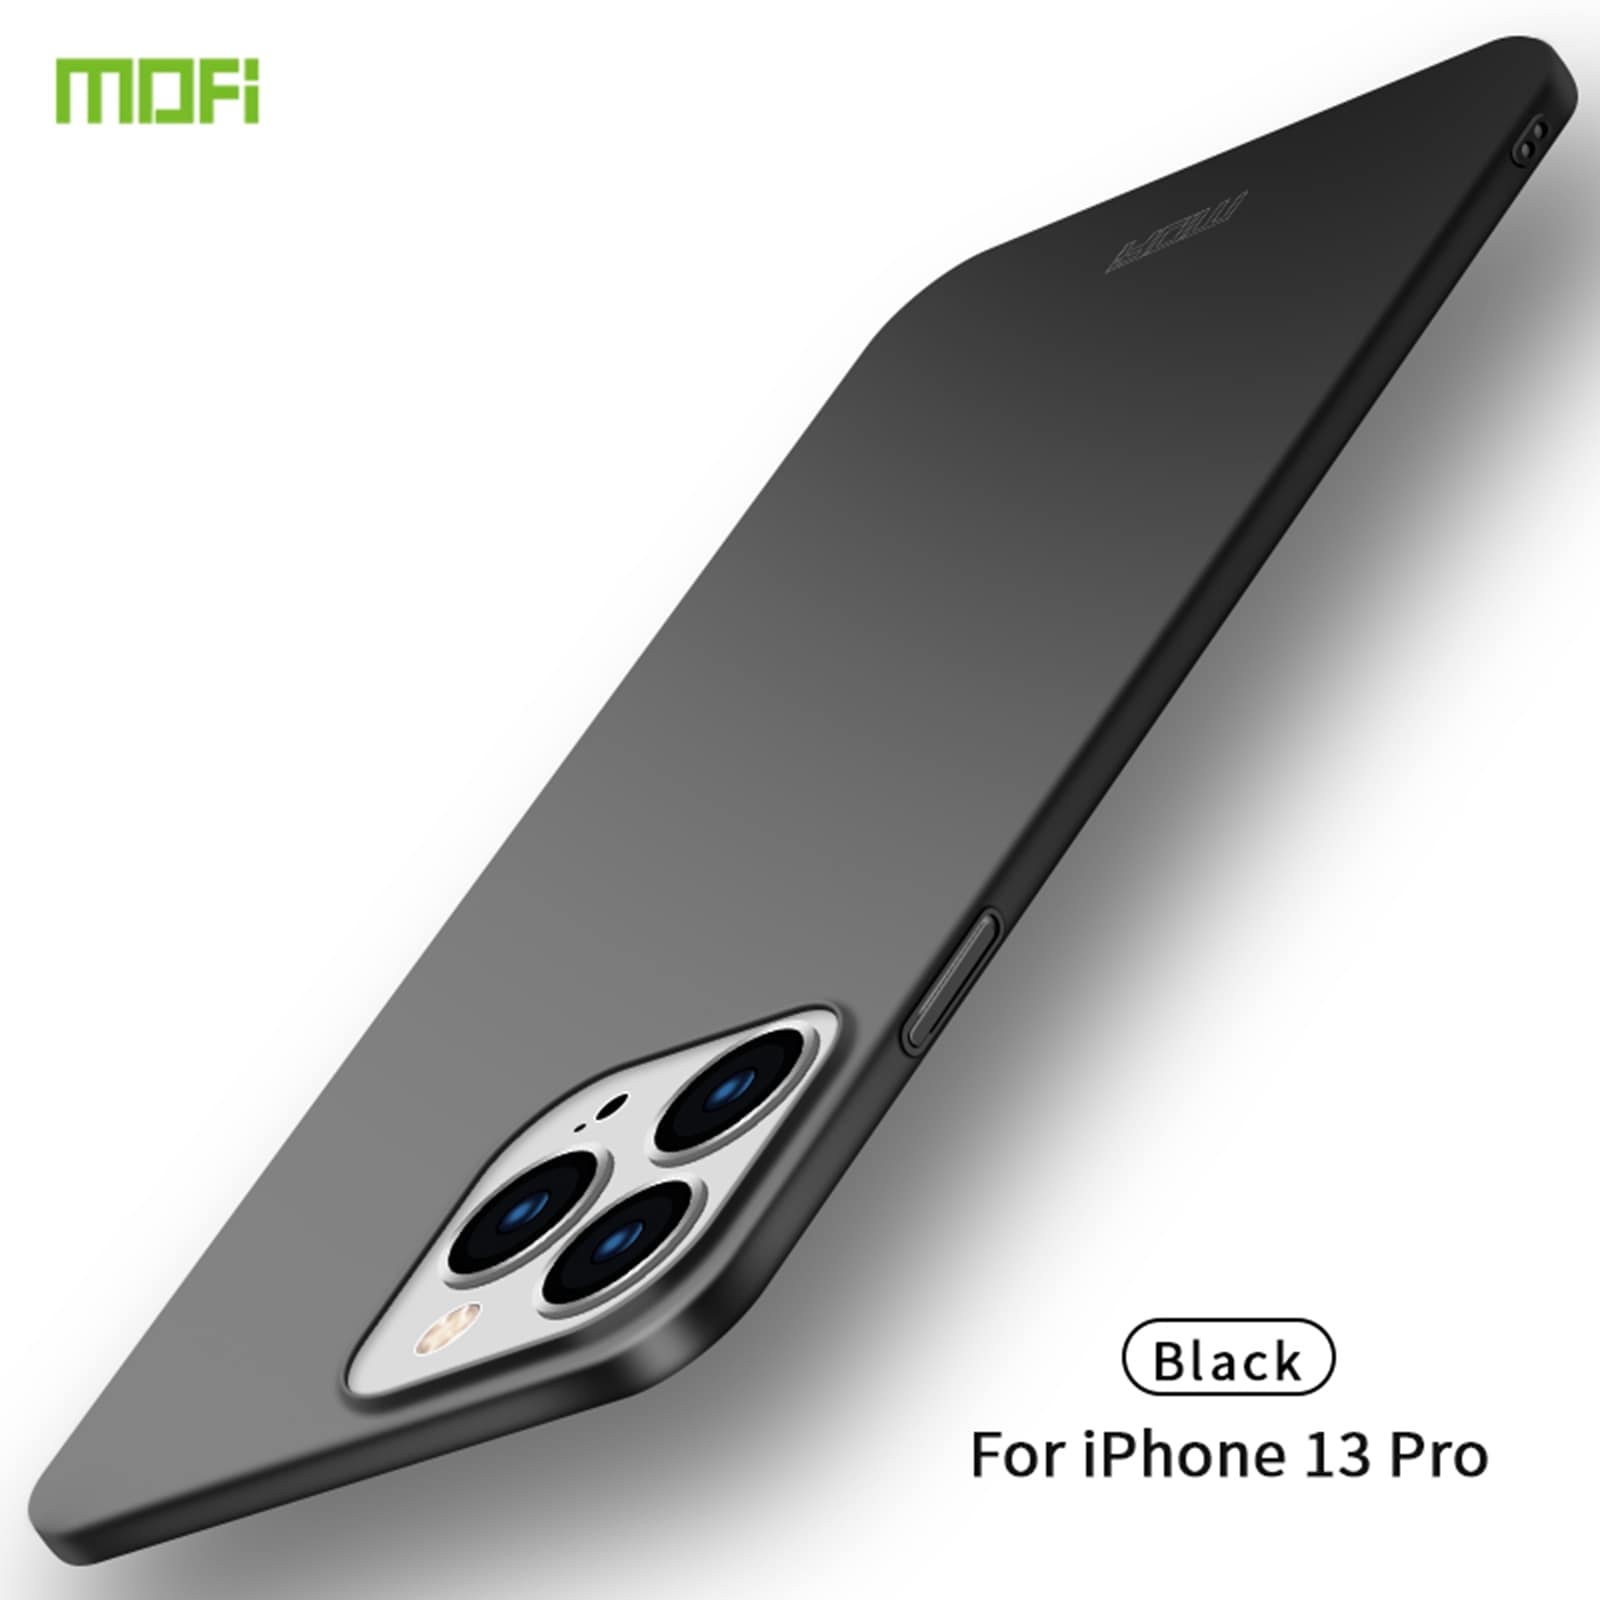 Ultratyndt MOFI-cover til iPhone 13 Pro - Sort